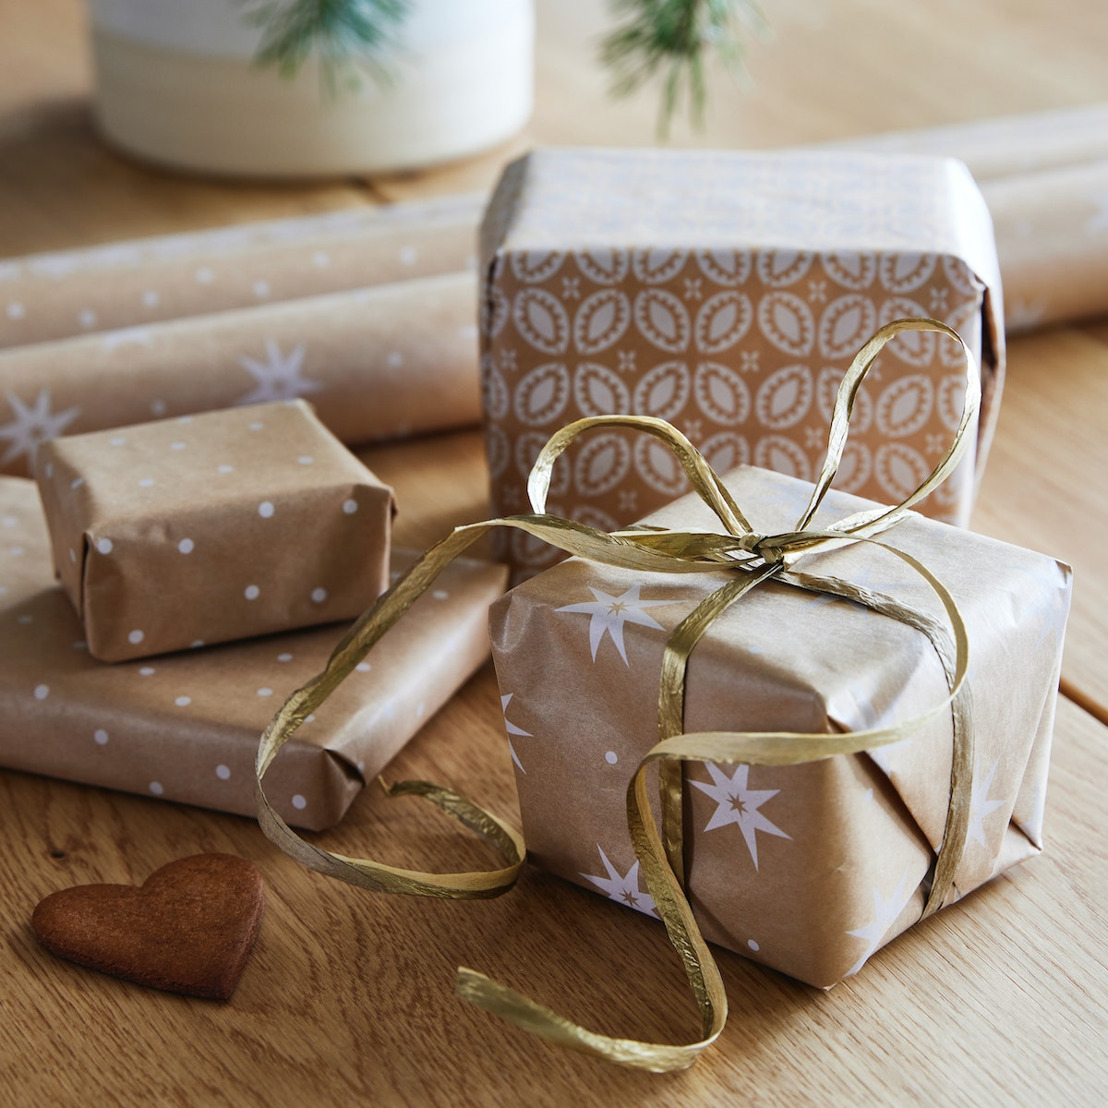 Fini le stress du choix des cadeaux. IKEA recommande le cadeau de fin d’année idéal pour chaque pièce de la maison & lance une liste de cadeaux numérique